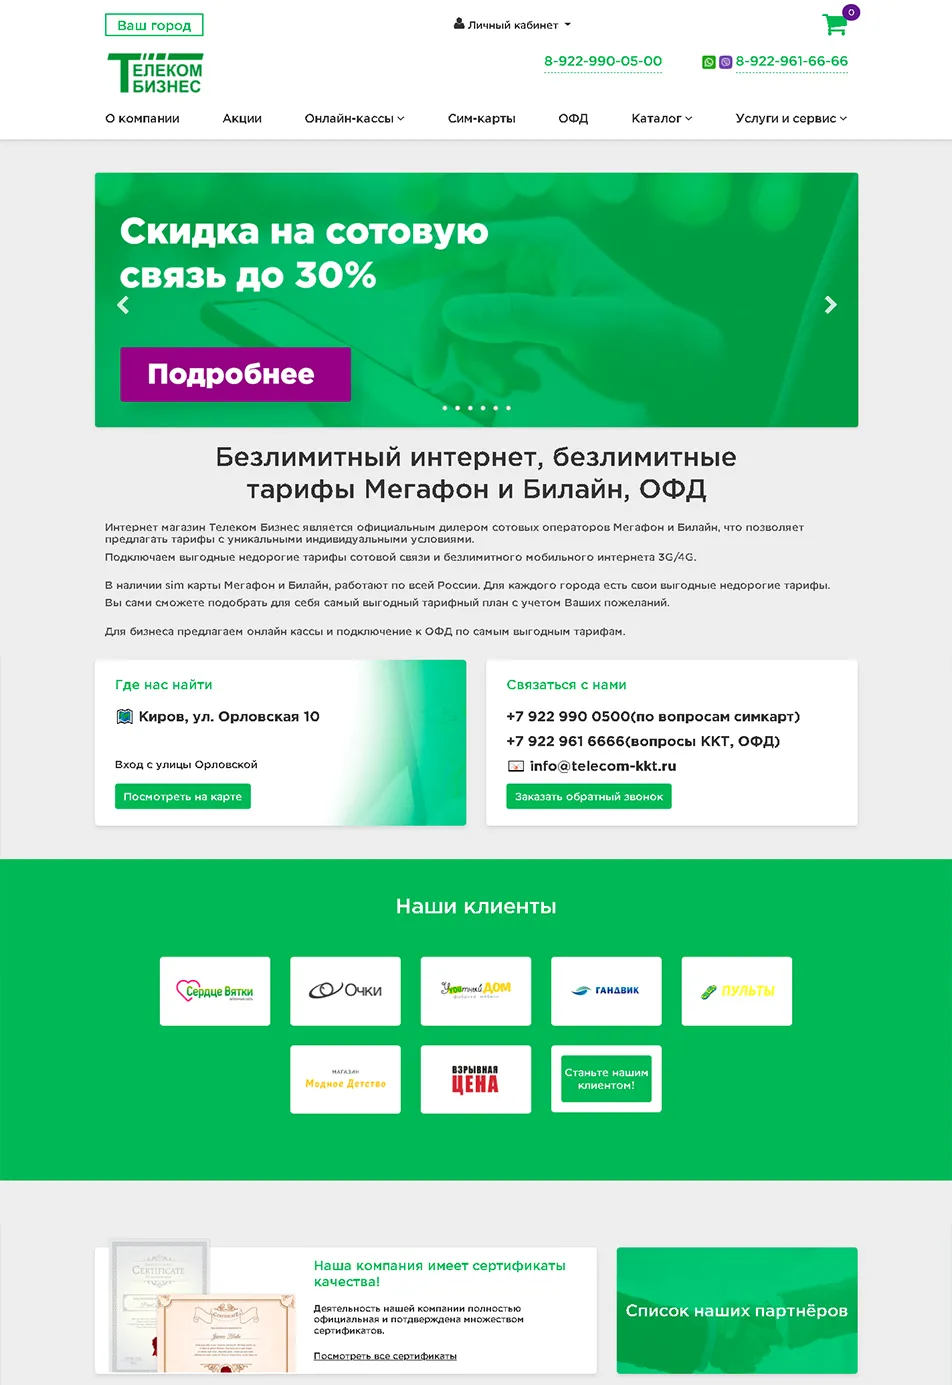 Интернет-магазин Телеком-Бизнес - сим-карты, безлимитный интернет, офд кассы. telecom-kkt.ru